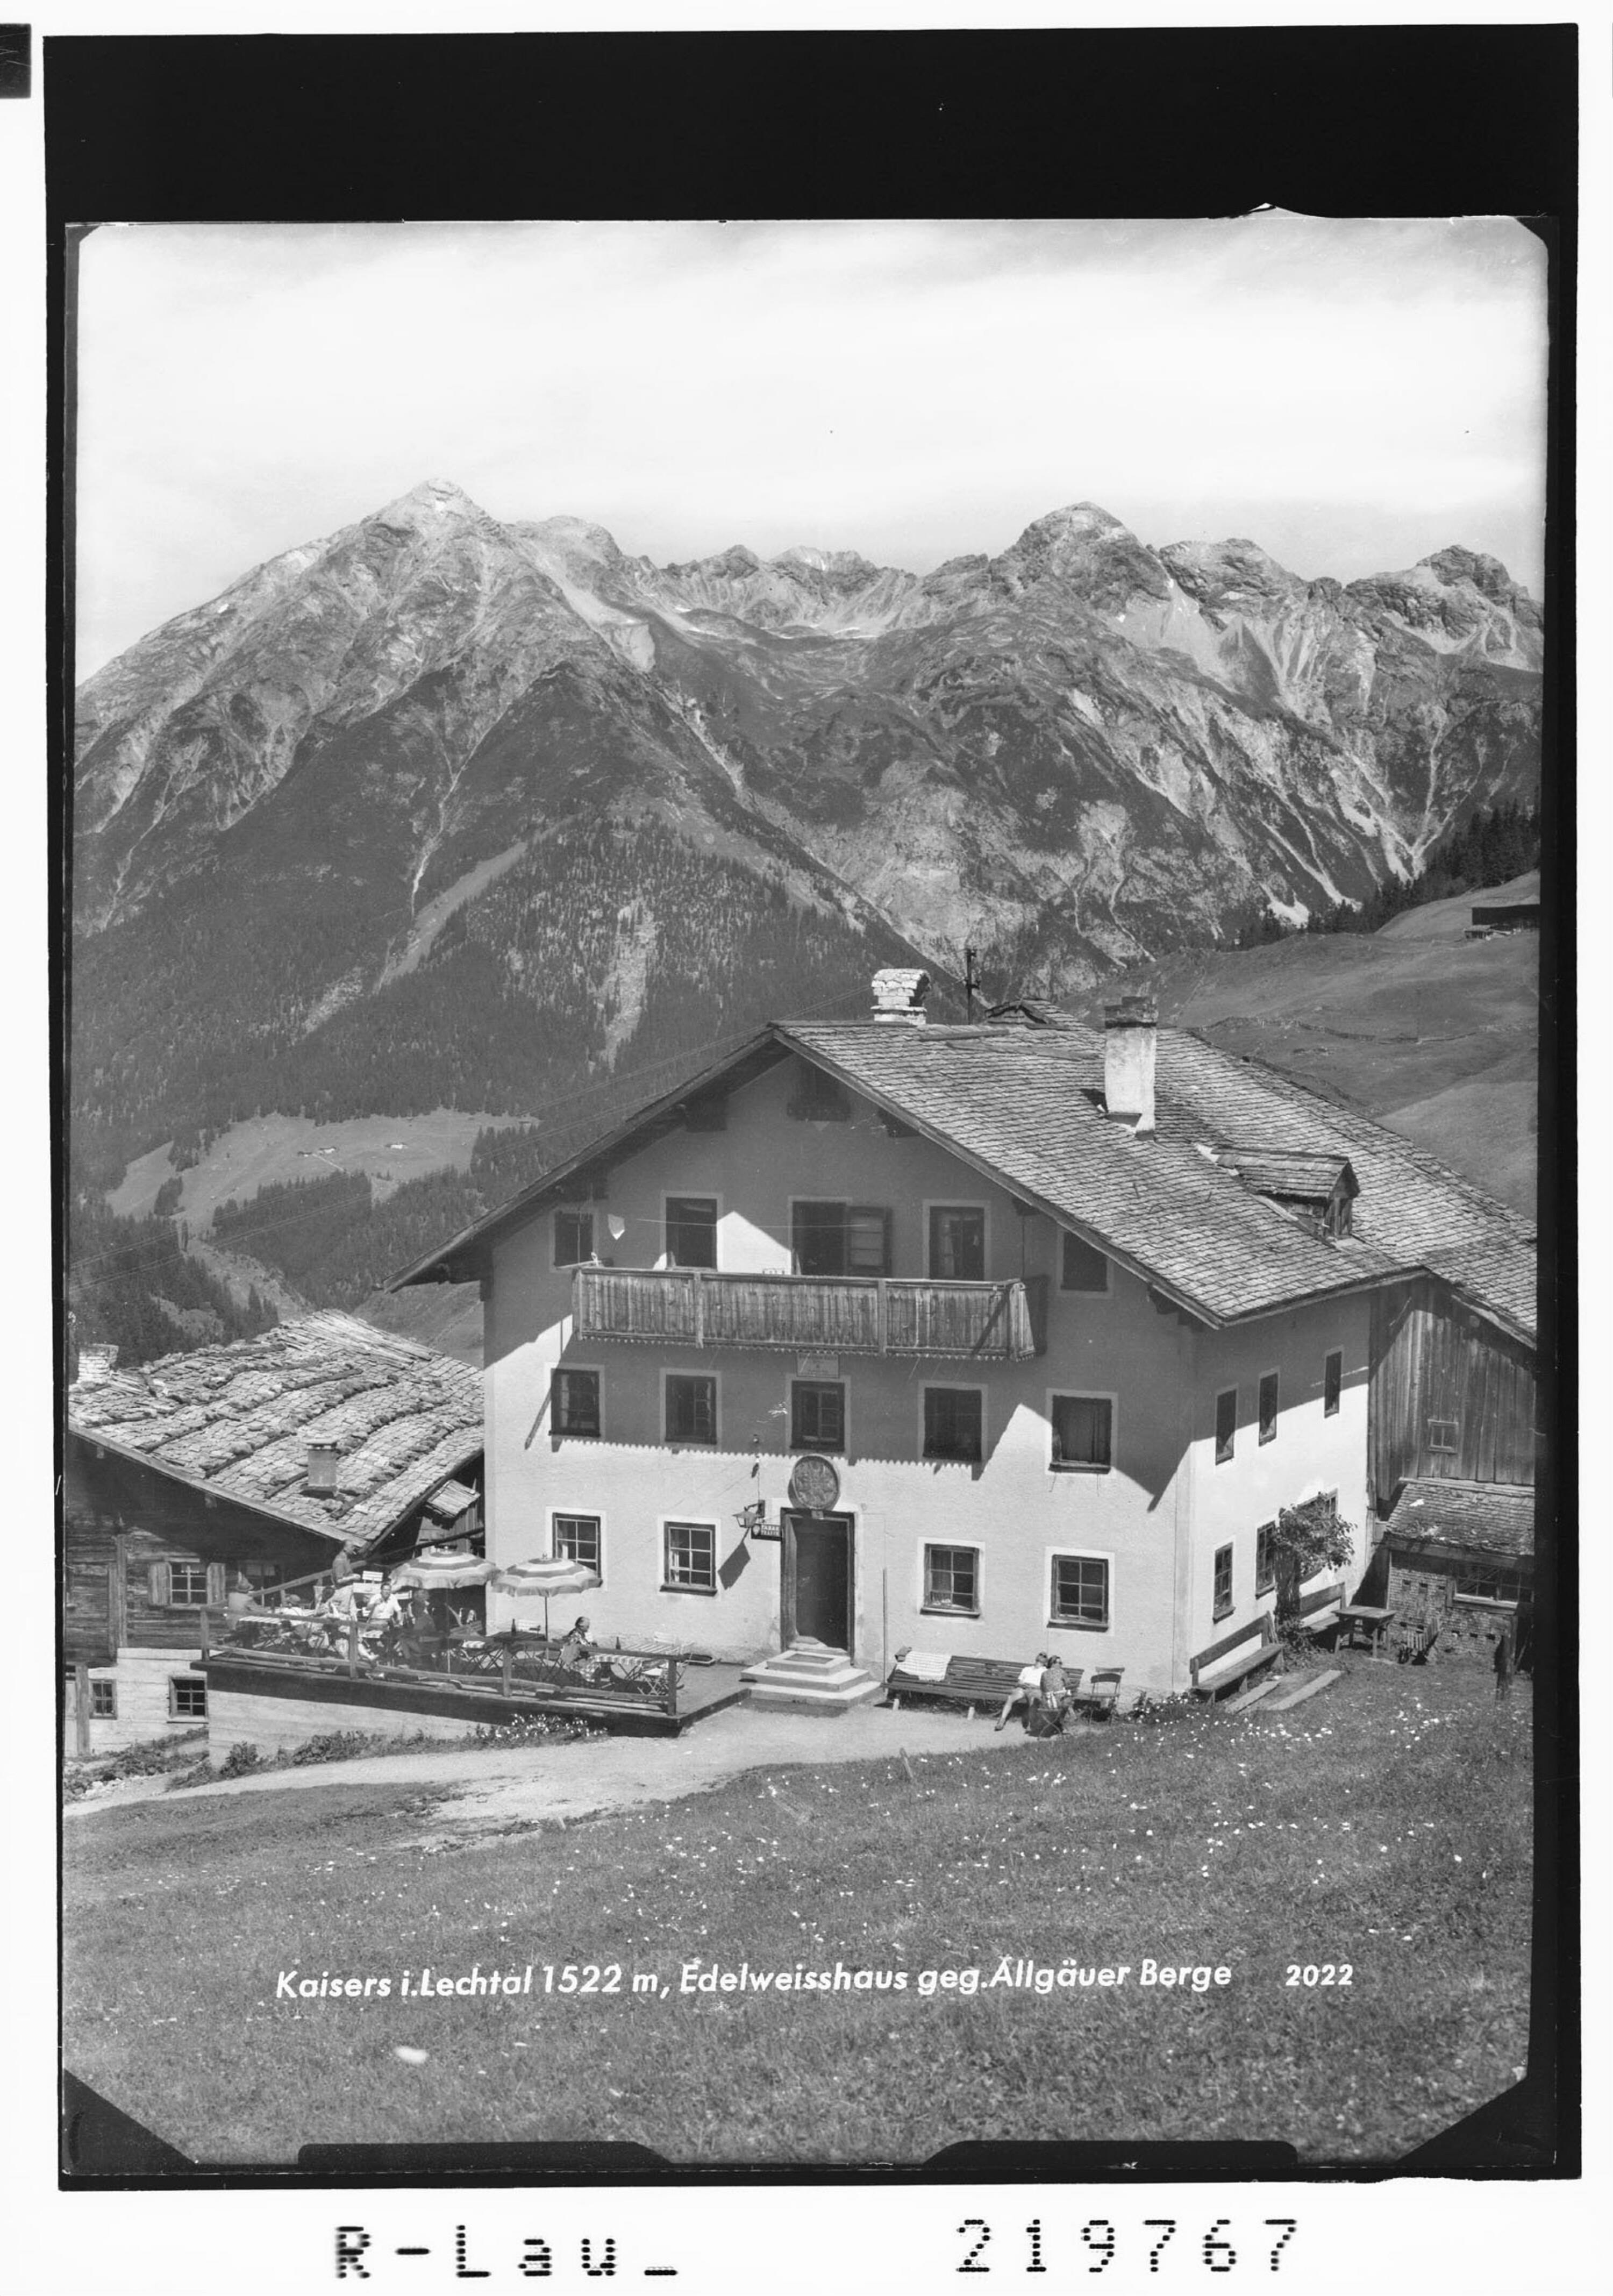 Kaisers im Lechtal 1522 m, Edelweisshaus gegen Allgäuer Berge></div>


    <hr>
    <div class=